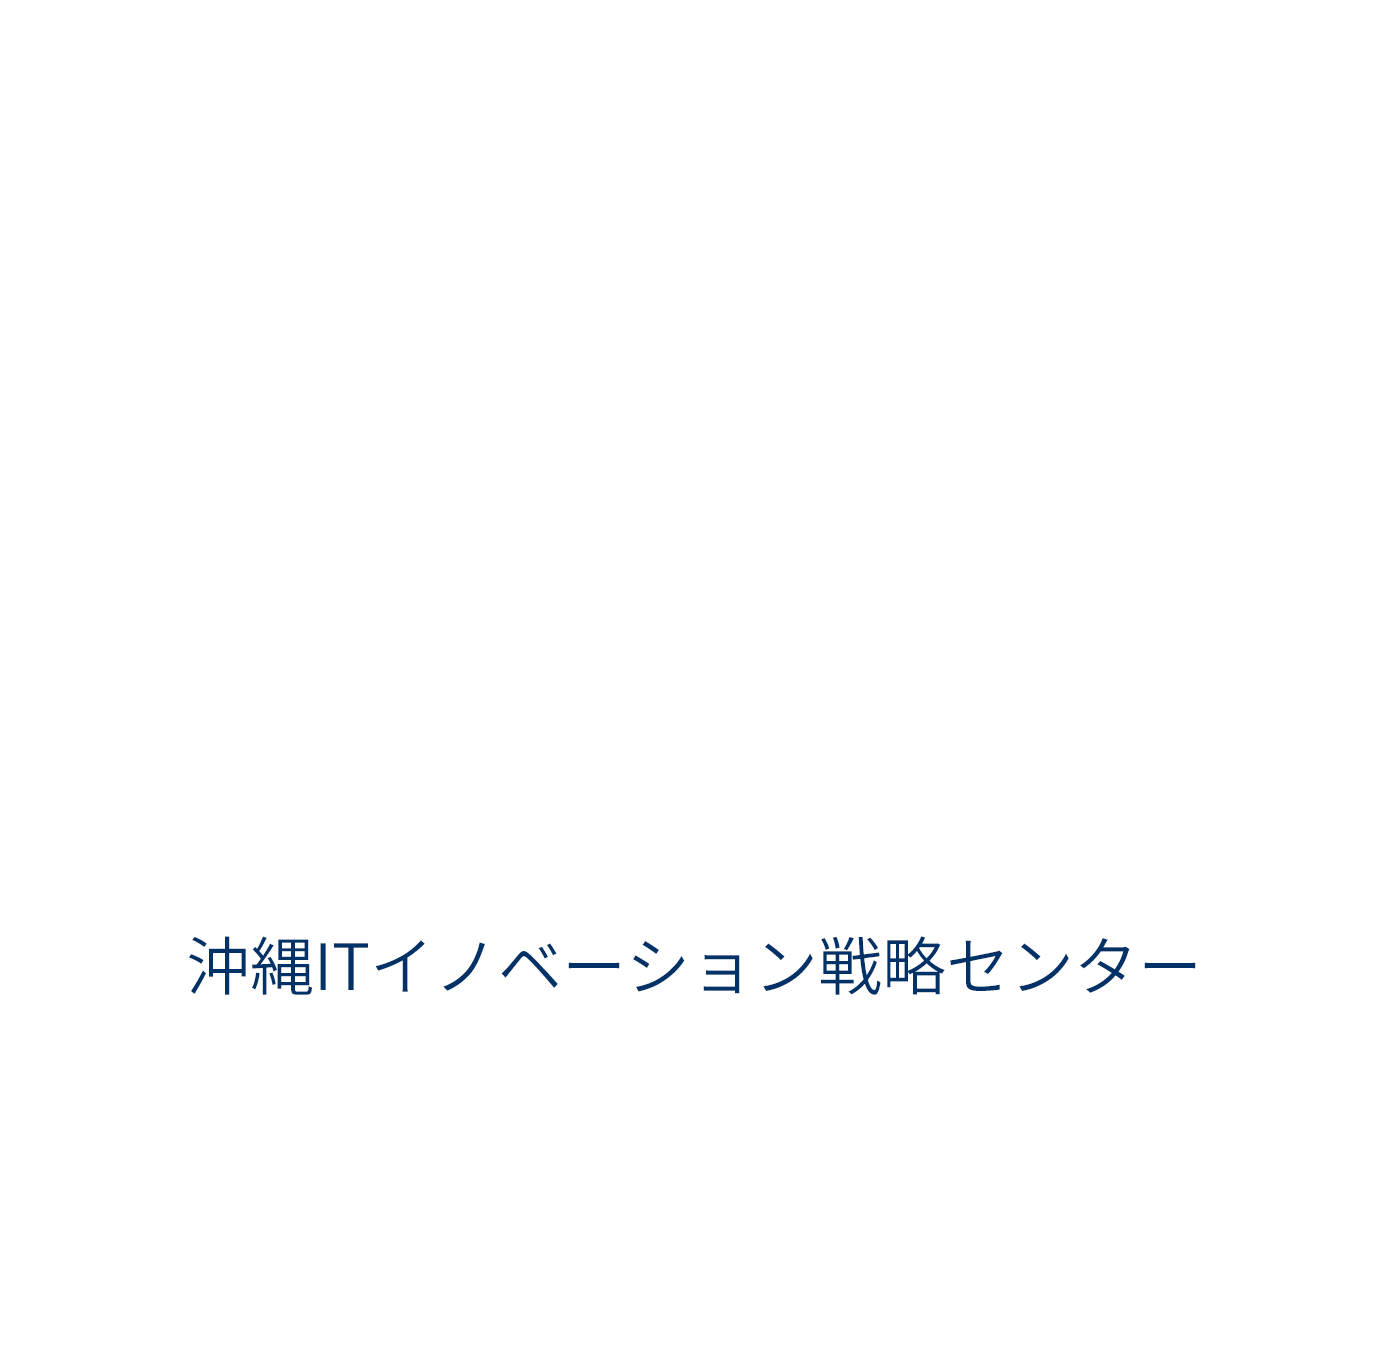 IT Innovation and Strategy Center Okinawa「沖縄ITイノベーション戦略センター」 | ITイノベーションを活用し、破壊的創造を起こすようなサービス、産業を【沖縄で】共創(Co-Creation)する。